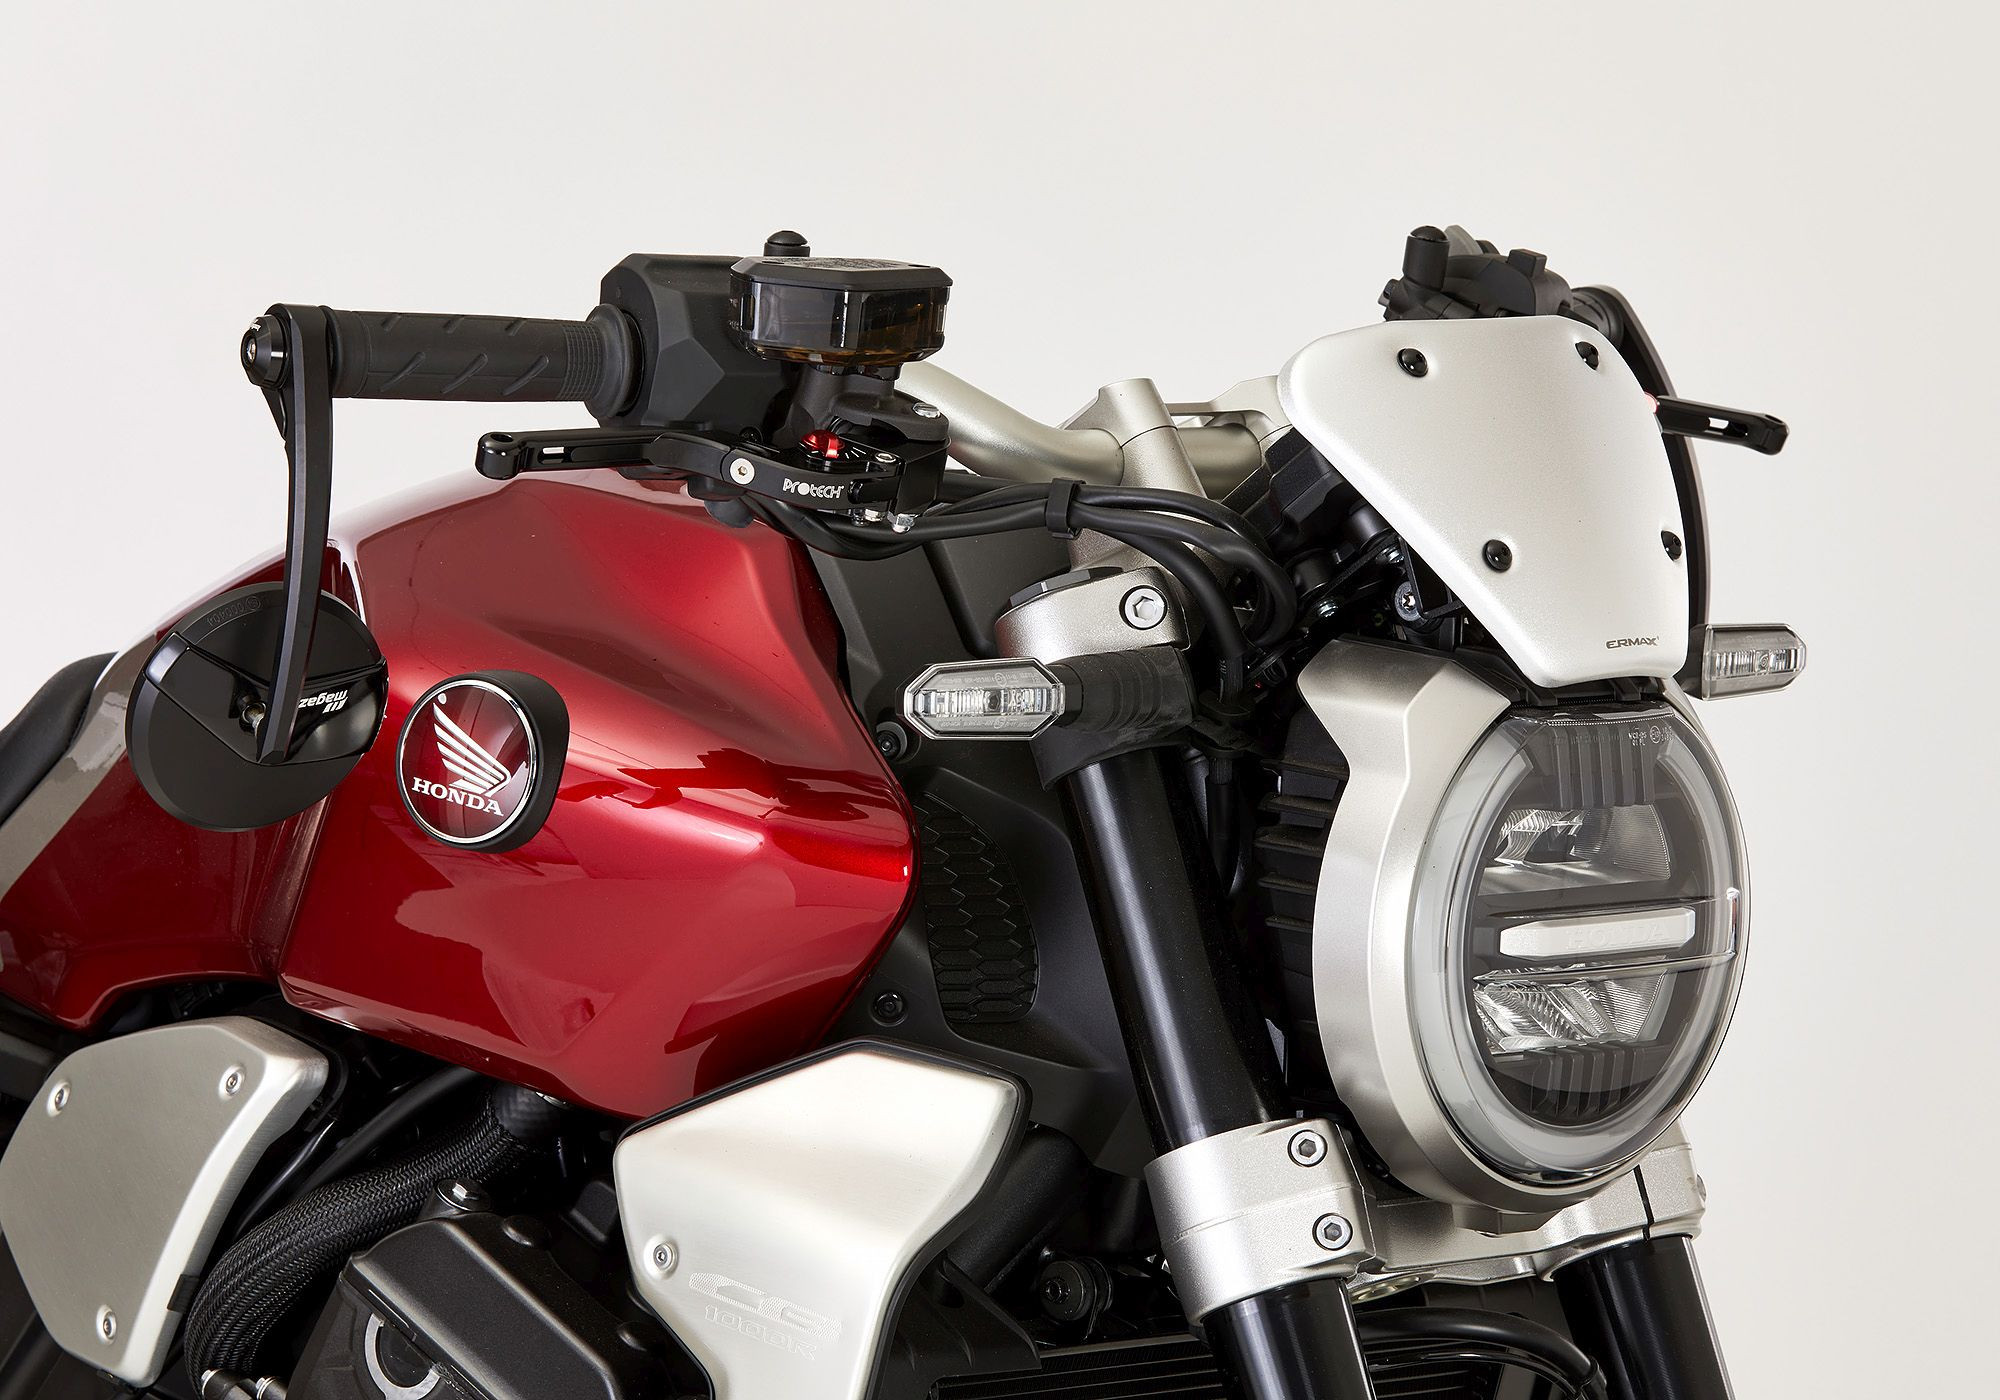 BODYSTYLE Scheinwerferverkleidung silber ABE passt für Honda CB1000R